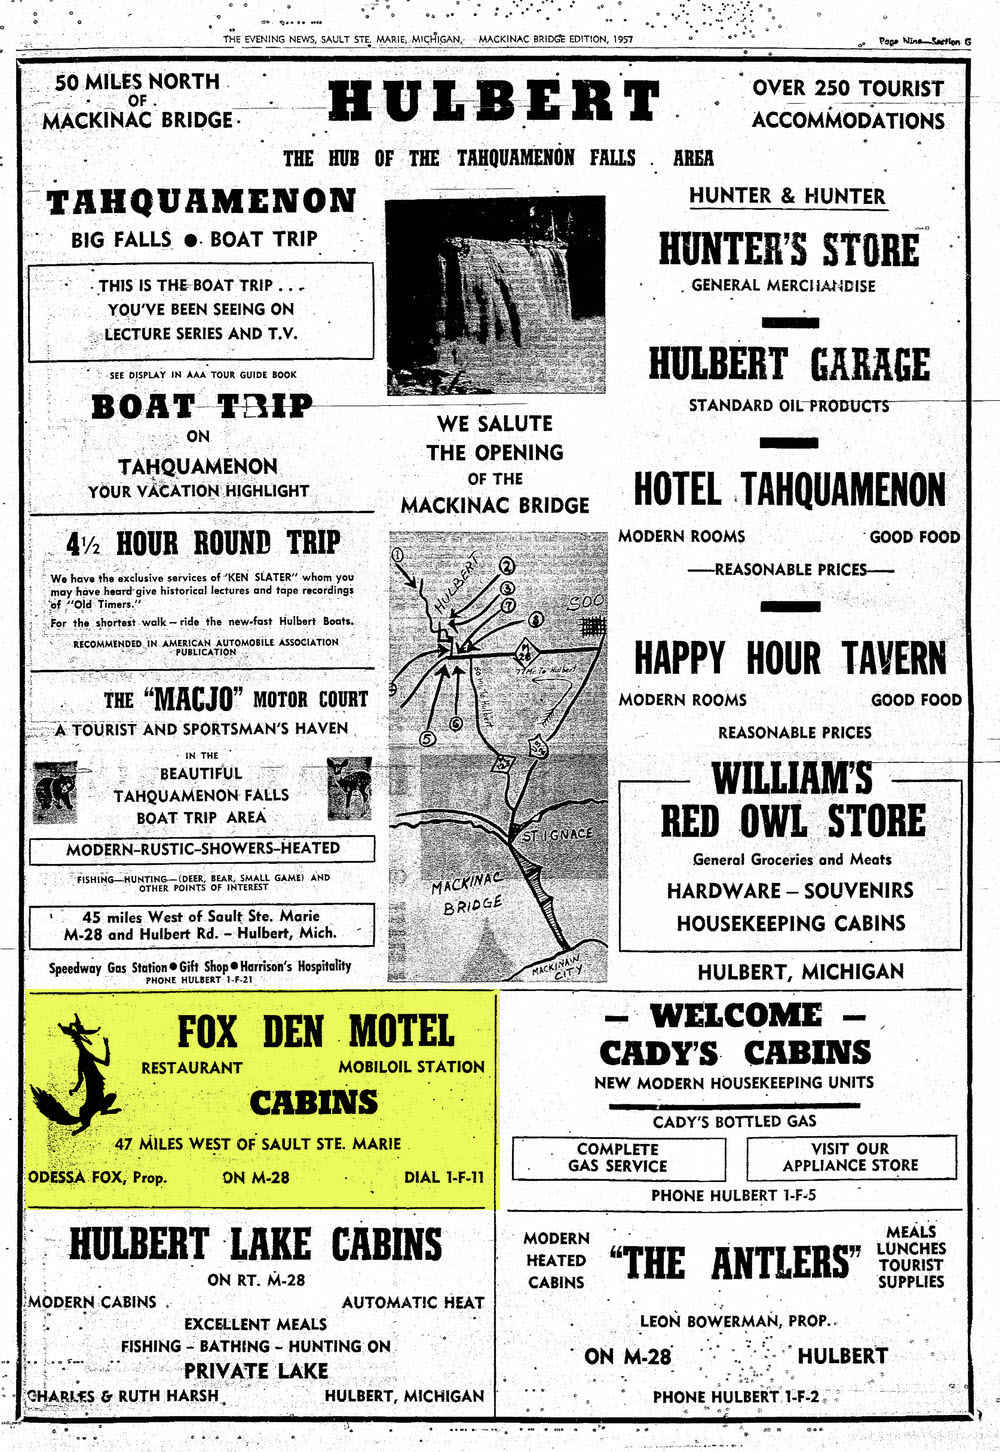 Fox Den Restaurant & Motel - Nov 1 1957 Ad